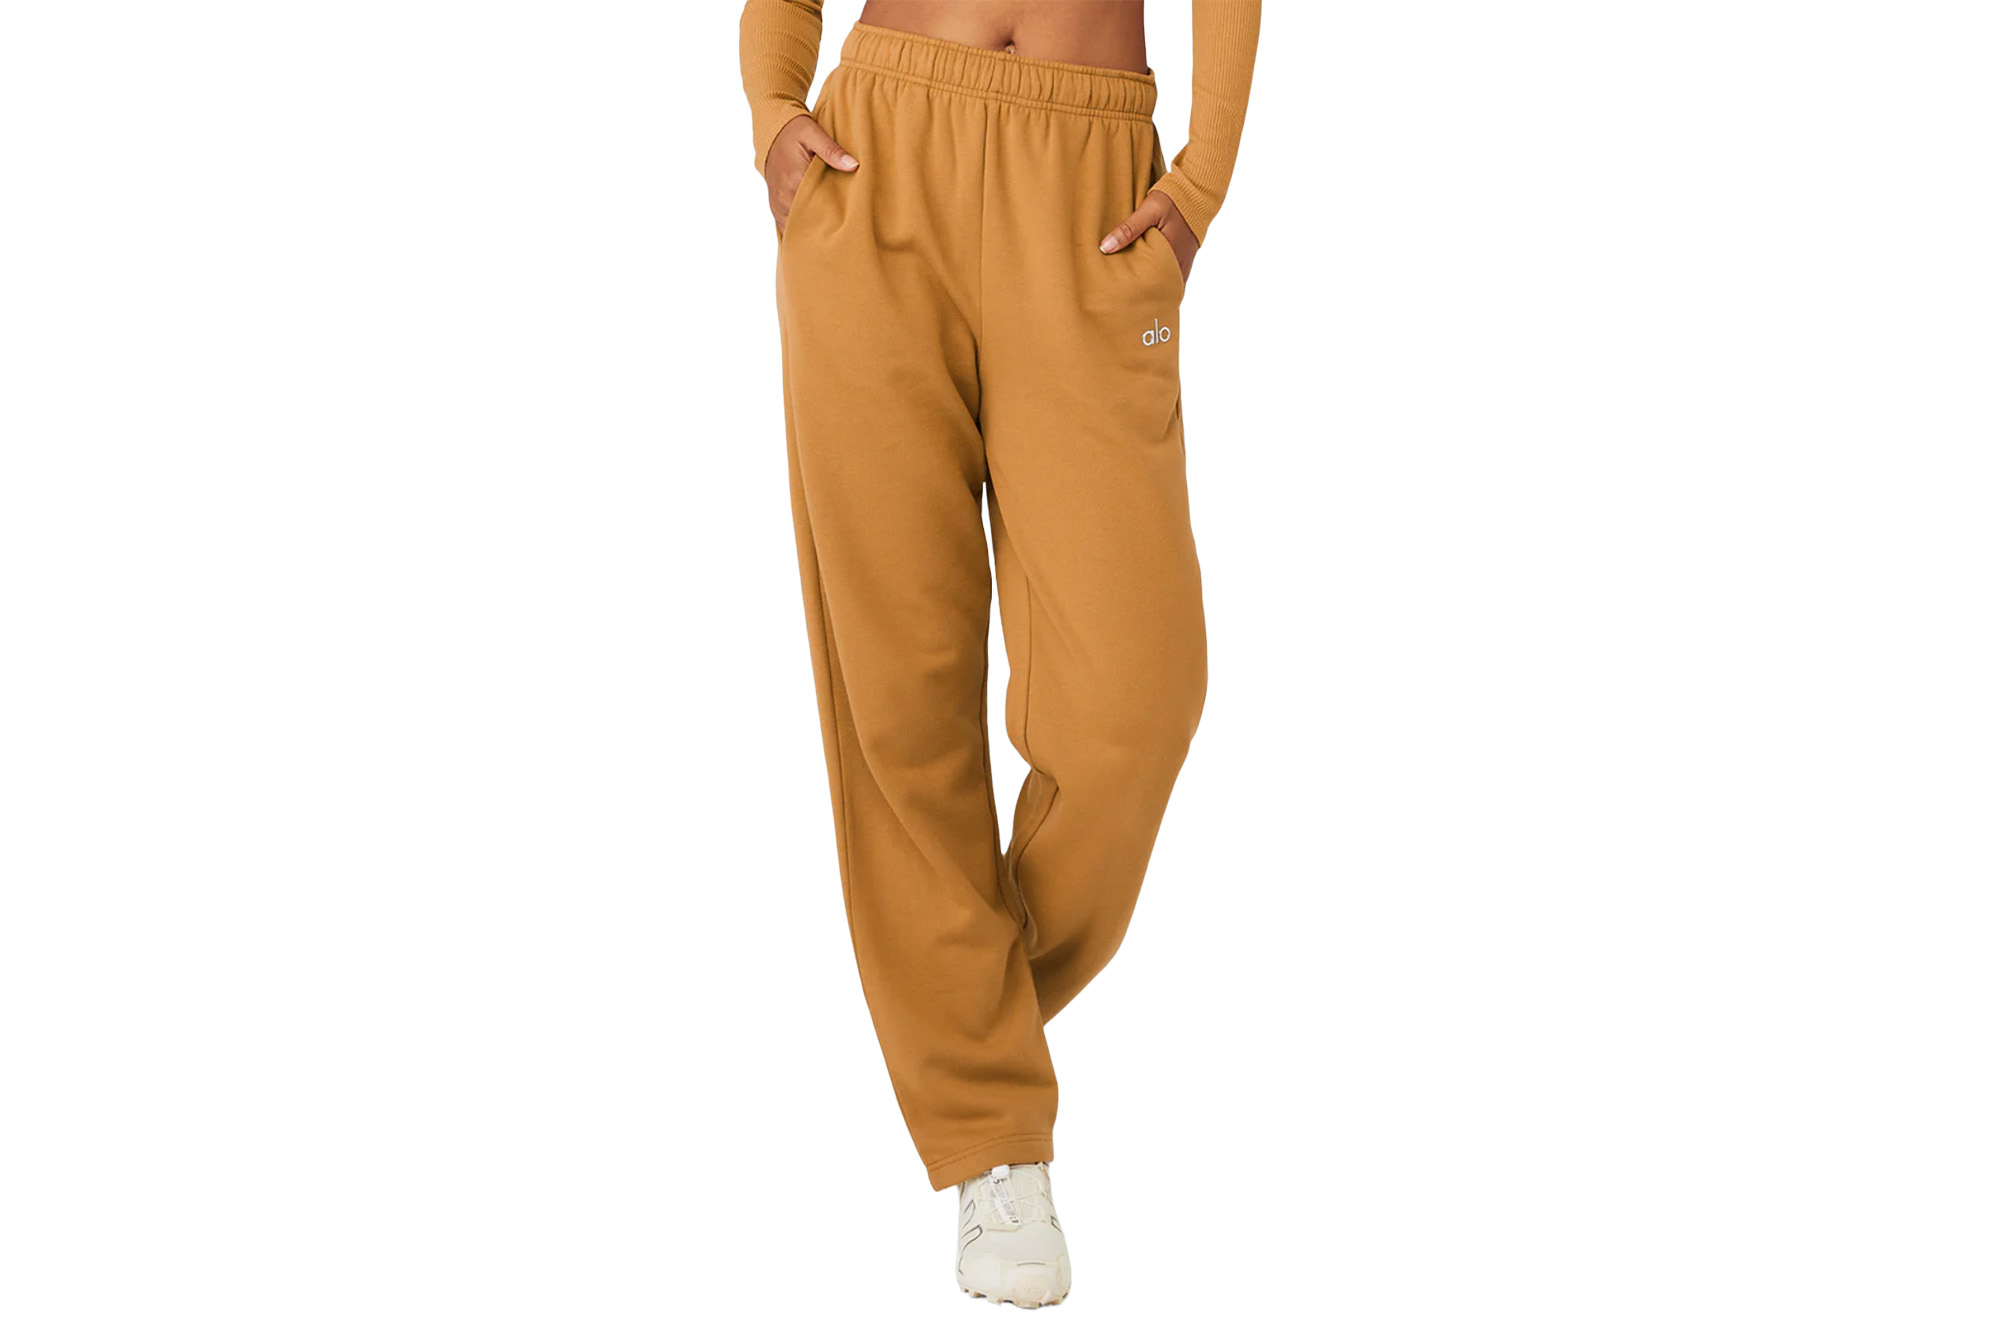 Ein Model trägt eine karamellfarbene Jogginghose